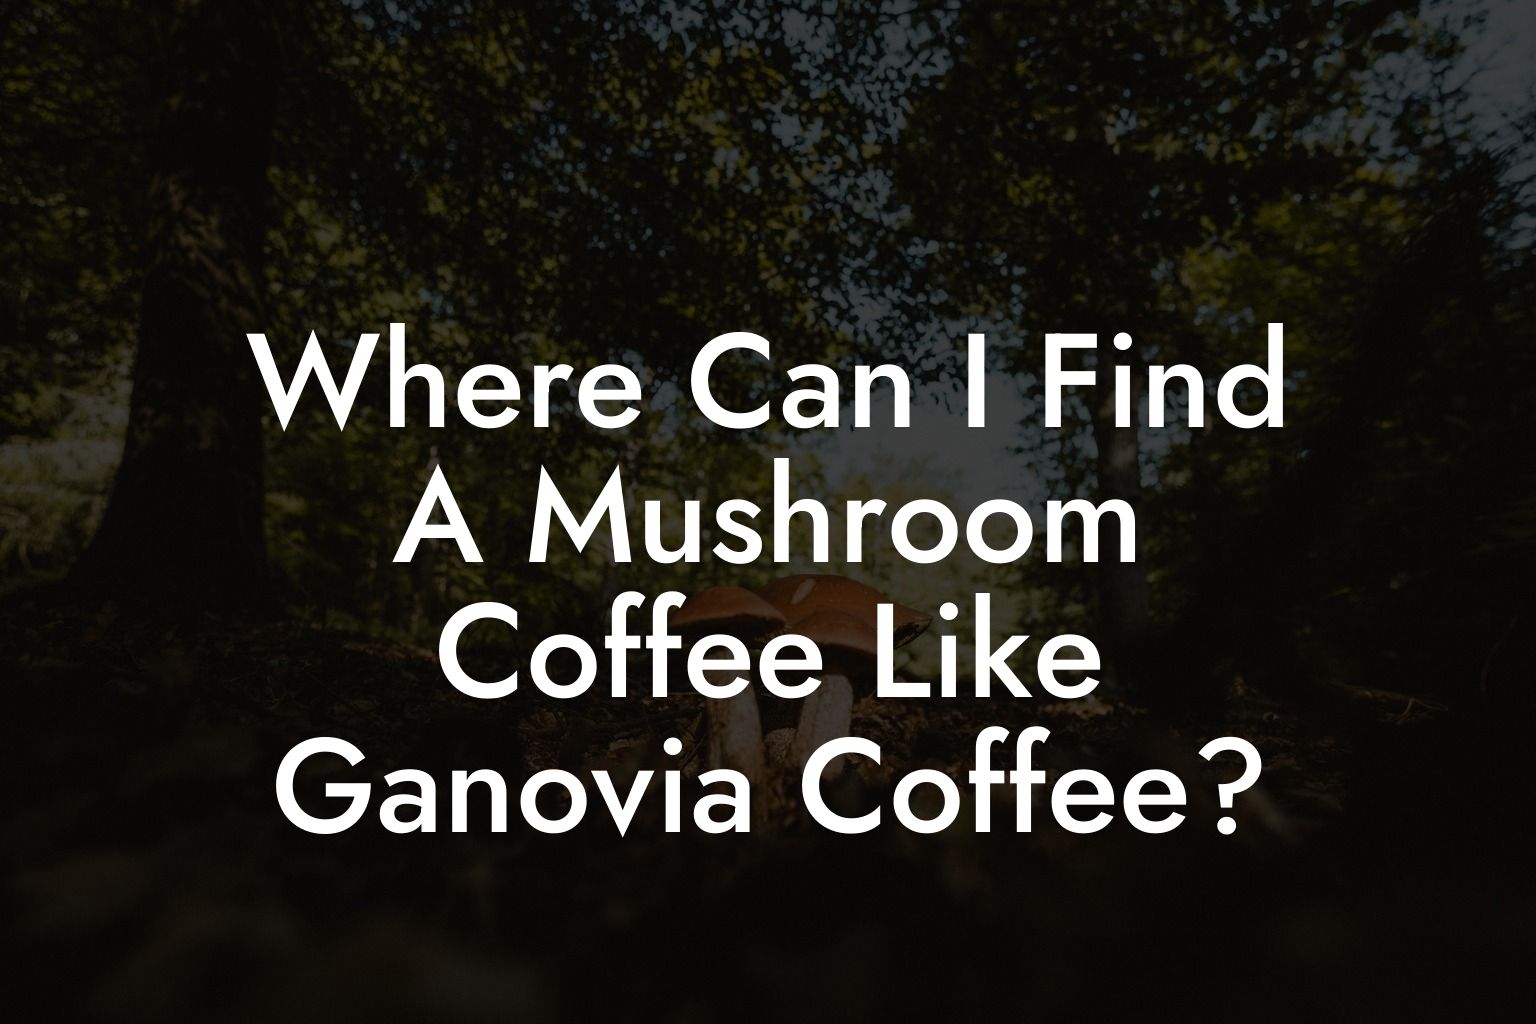 Where Can I Find A Mushroom Coffee Like Ganovia Coffee?